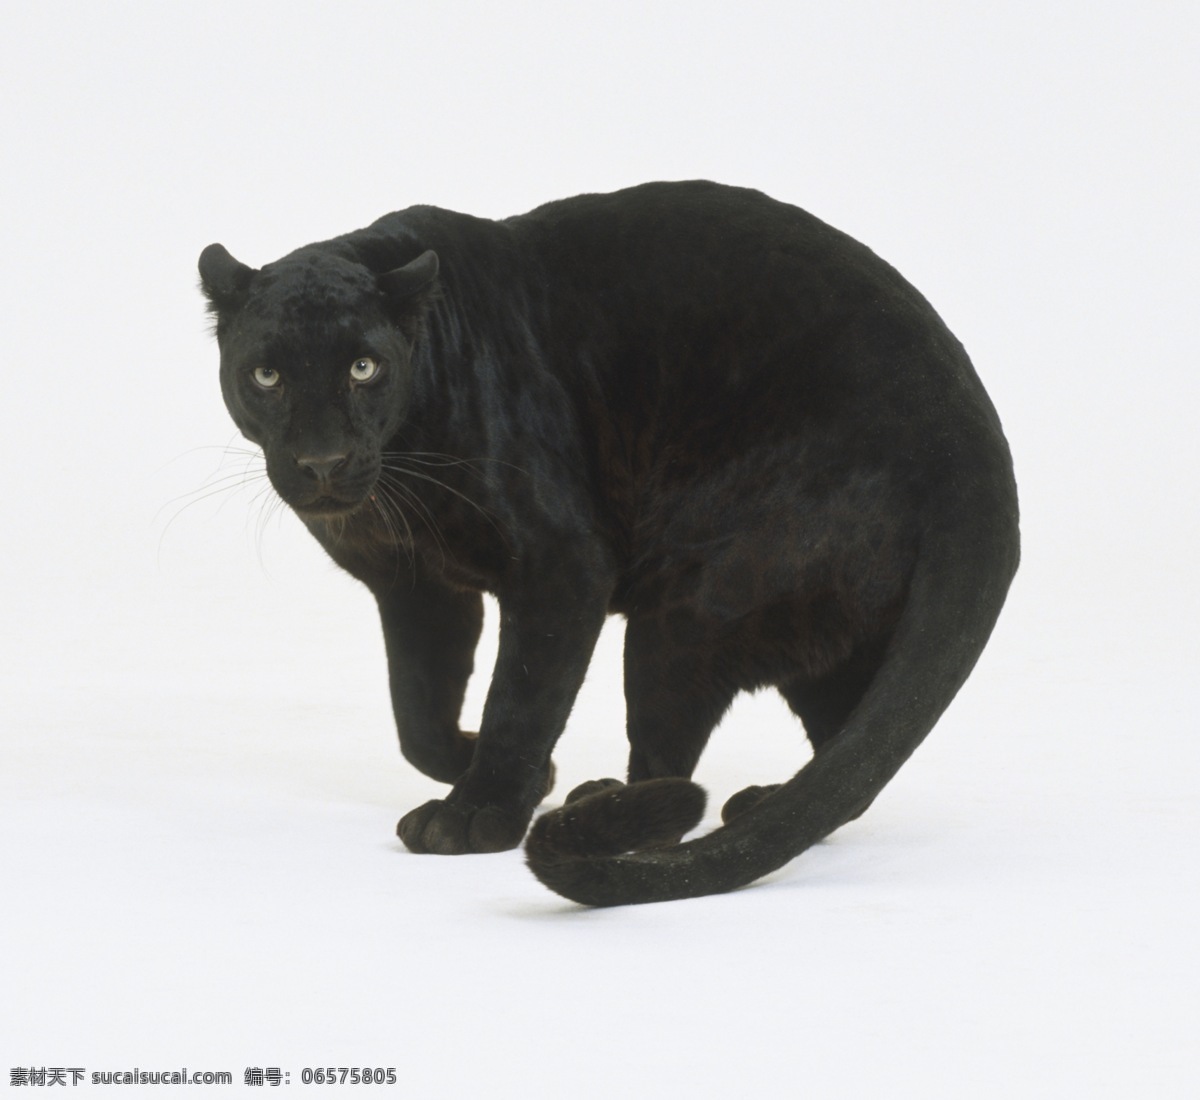 黑豹 动物 白色背景 伸展 美洲豹 机敏 生物 哺乳动物 脊椎动物 猫科动物 野生 生物世界 野生动物 摄影图库